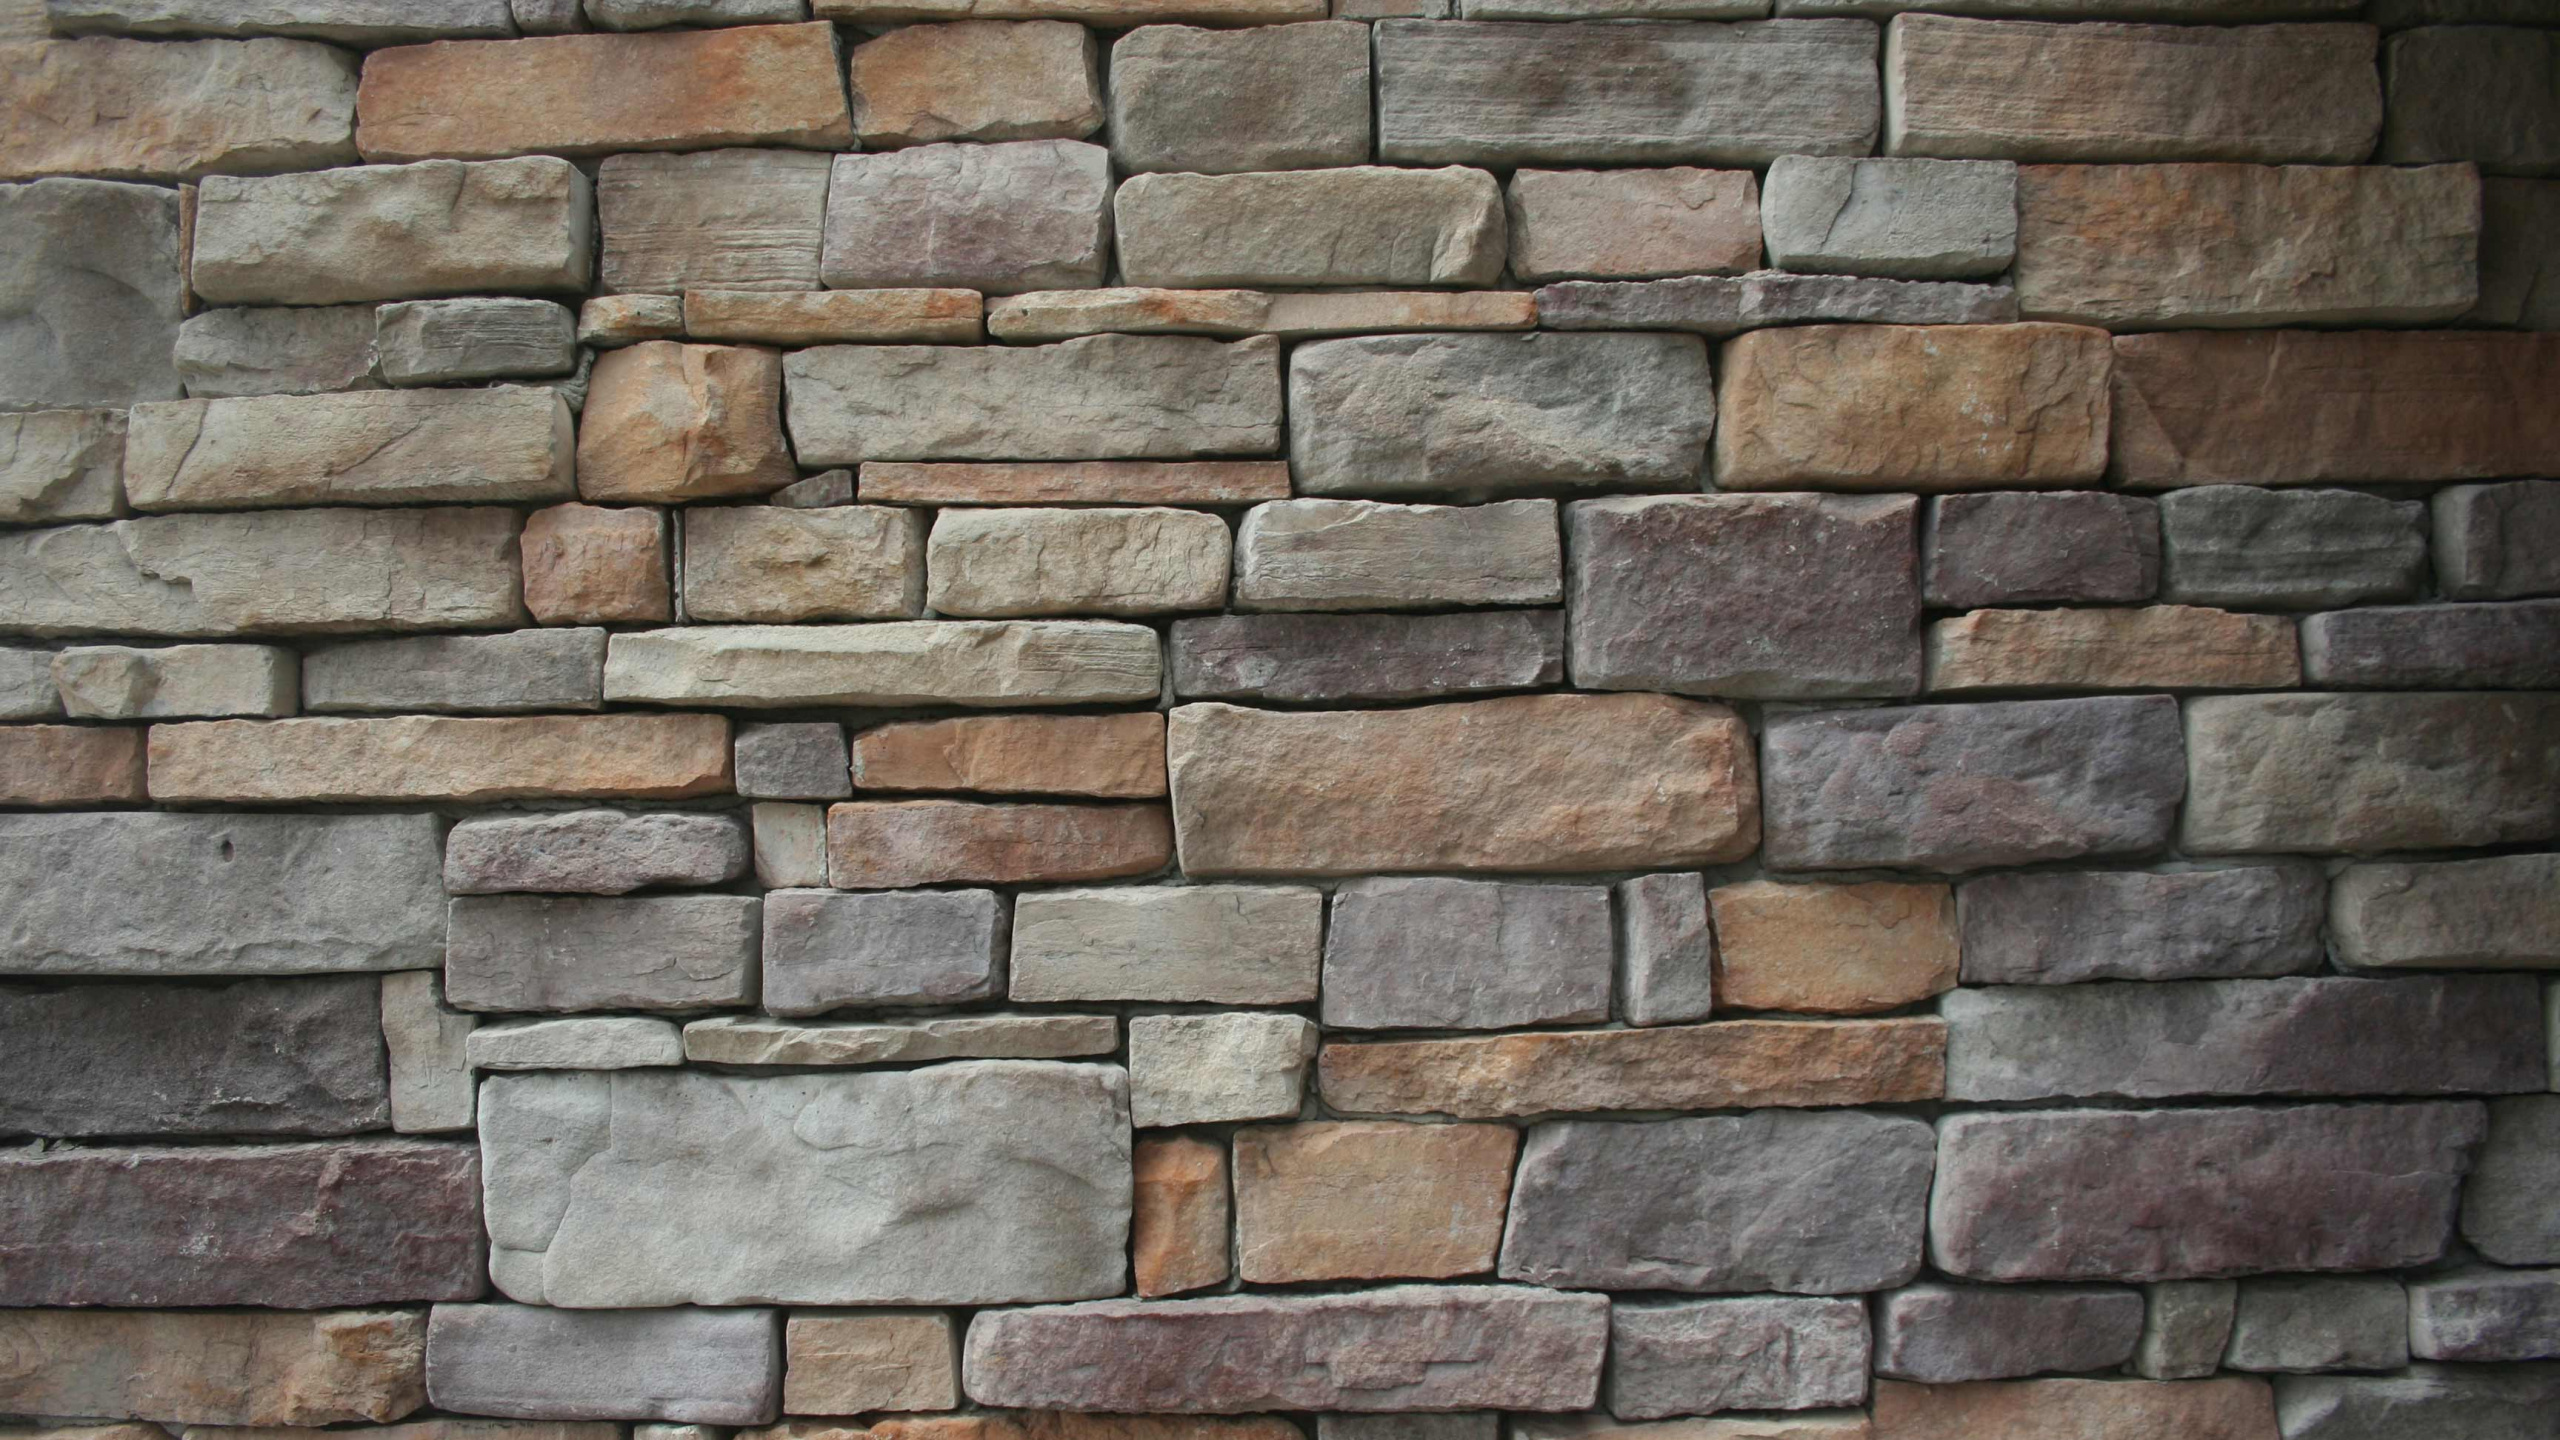 石壁, 石饰面, 砖, 瓦匠, 砌砖 壁纸 2560x1440 允许